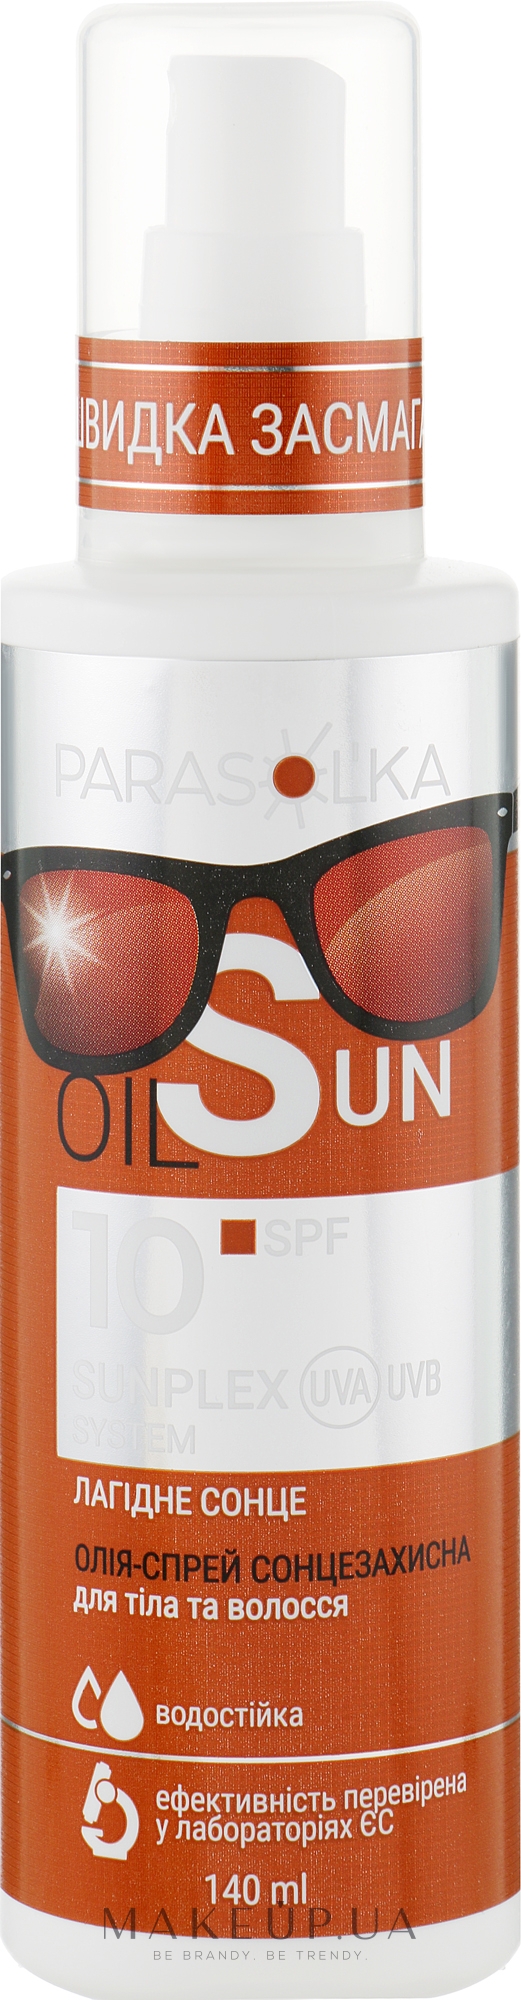 Масло-спрей солнцезащитное для тела и волос с абиссинским маслом SPF10 - Velta Cosmetic Parasol'ka Oil Sun  — фото 140ml